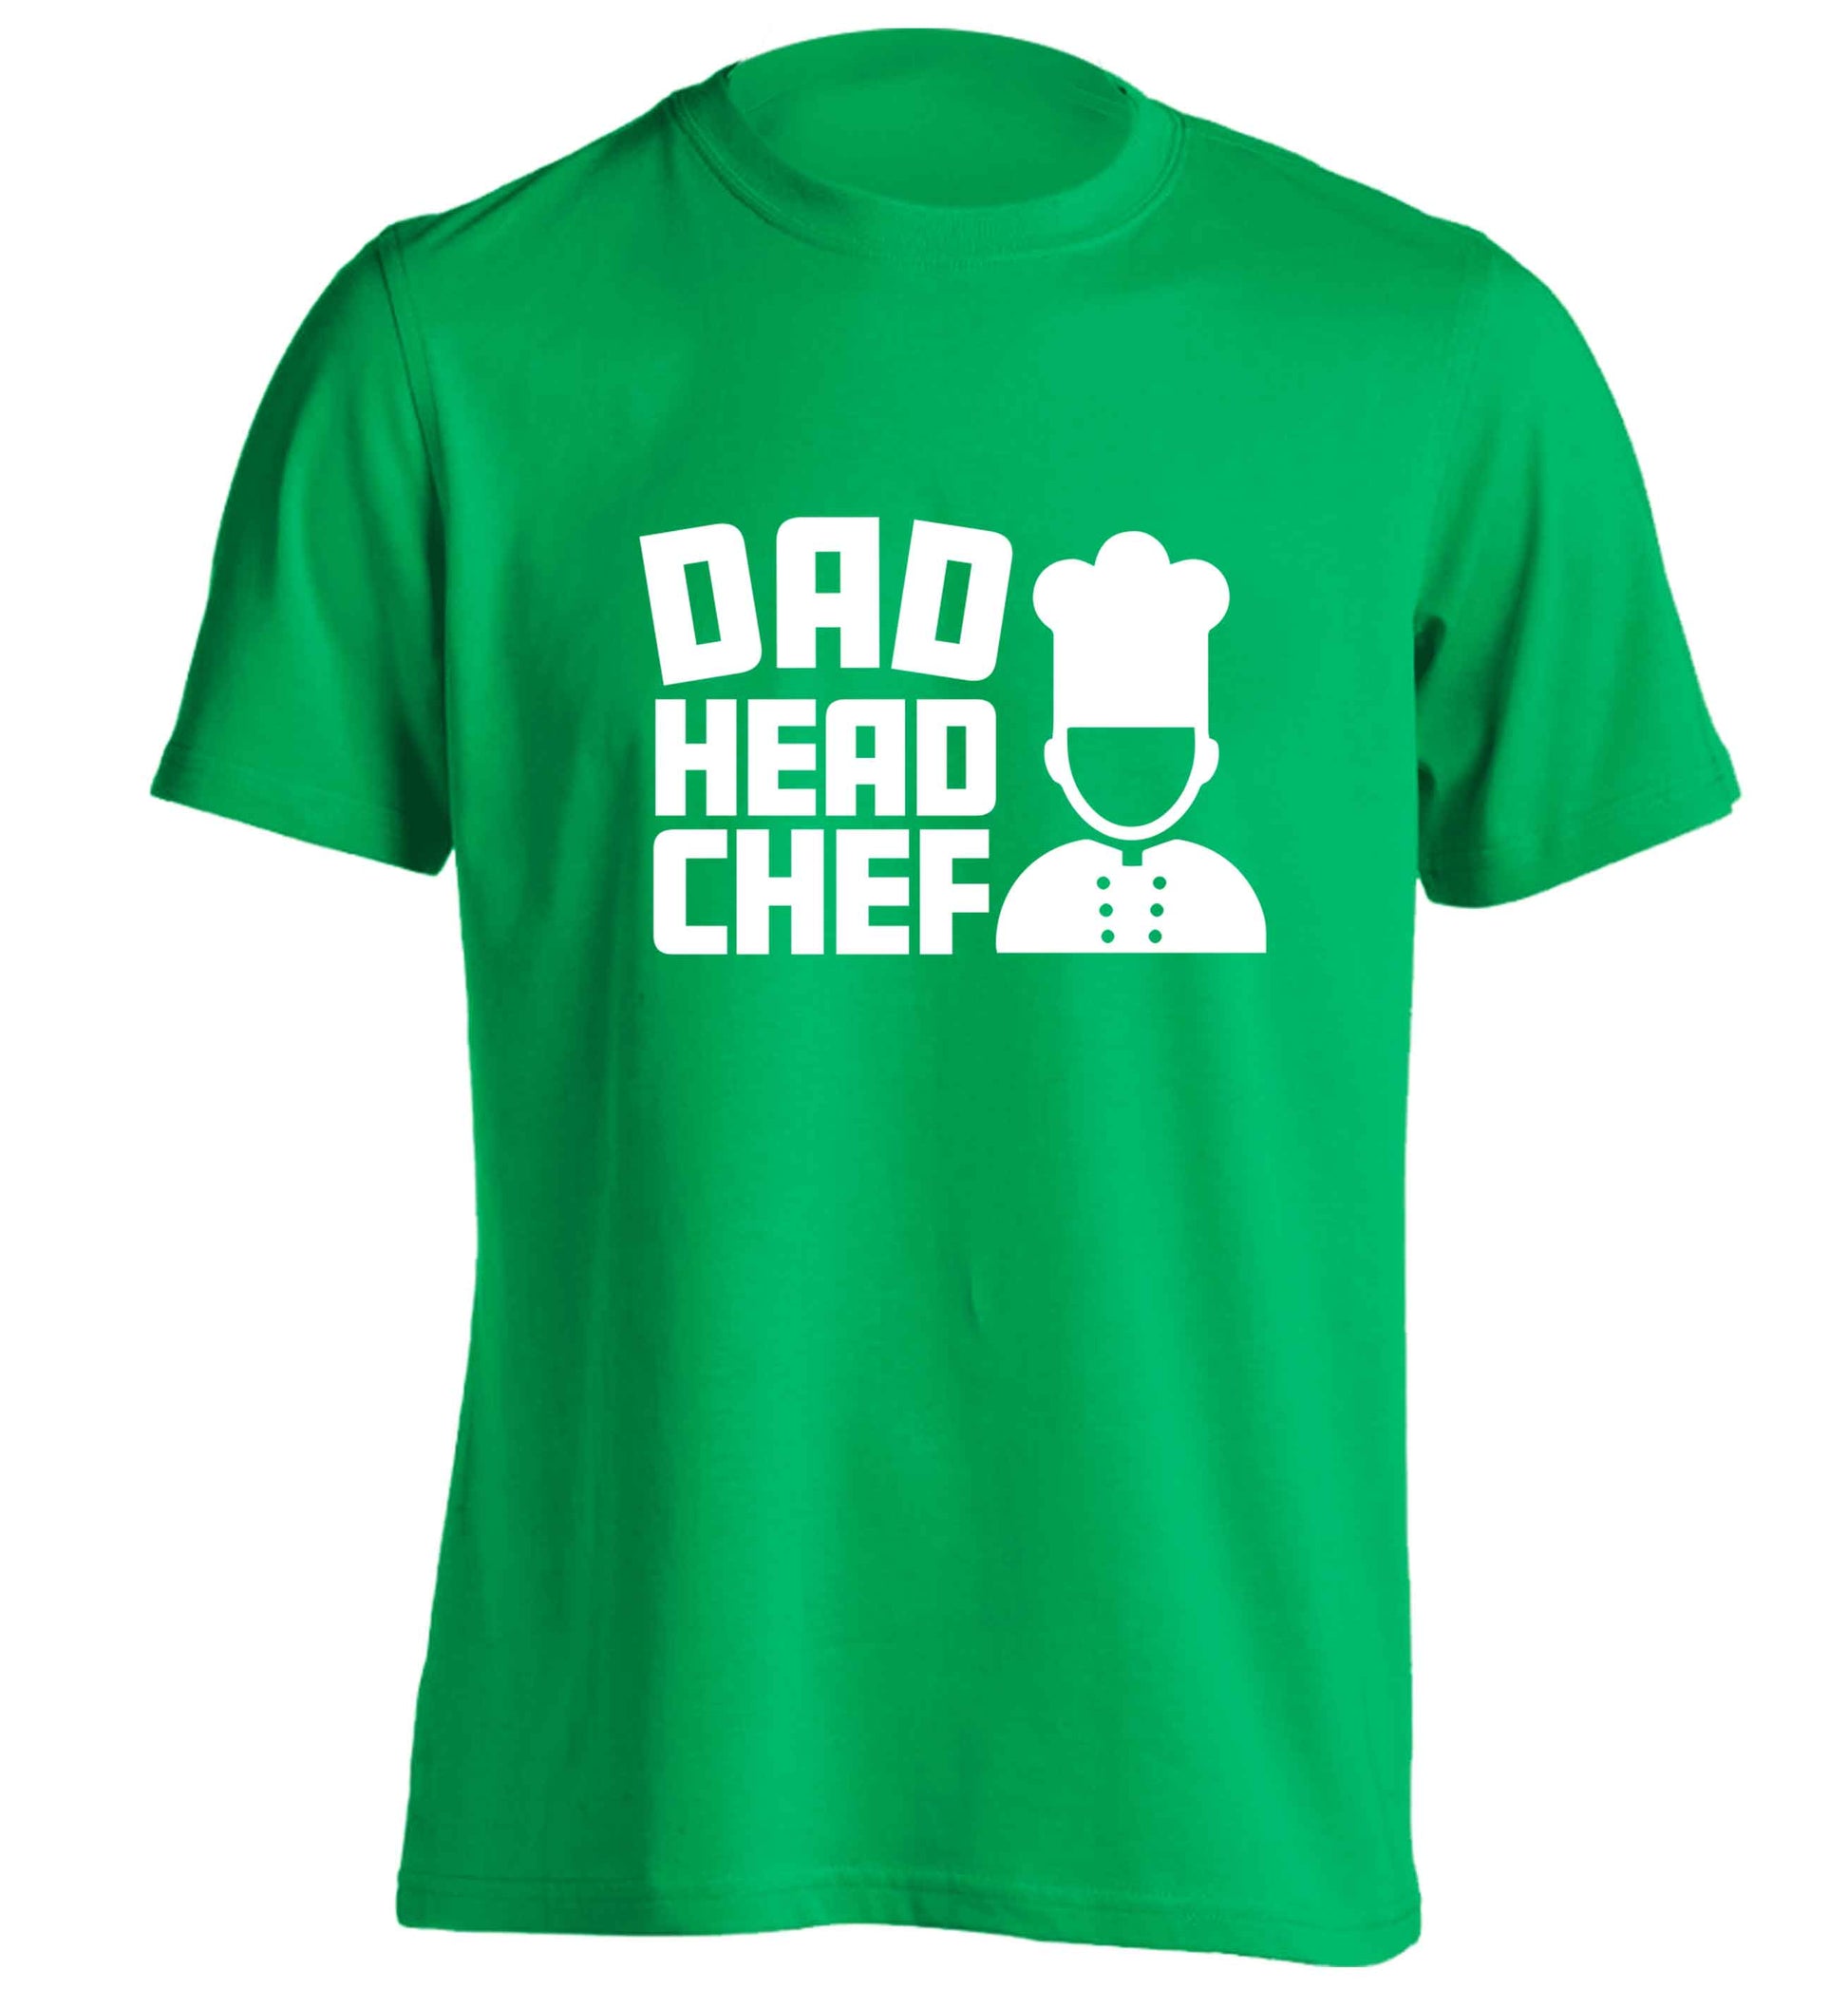 Dad head chef adults unisex green Tshirt 2XL